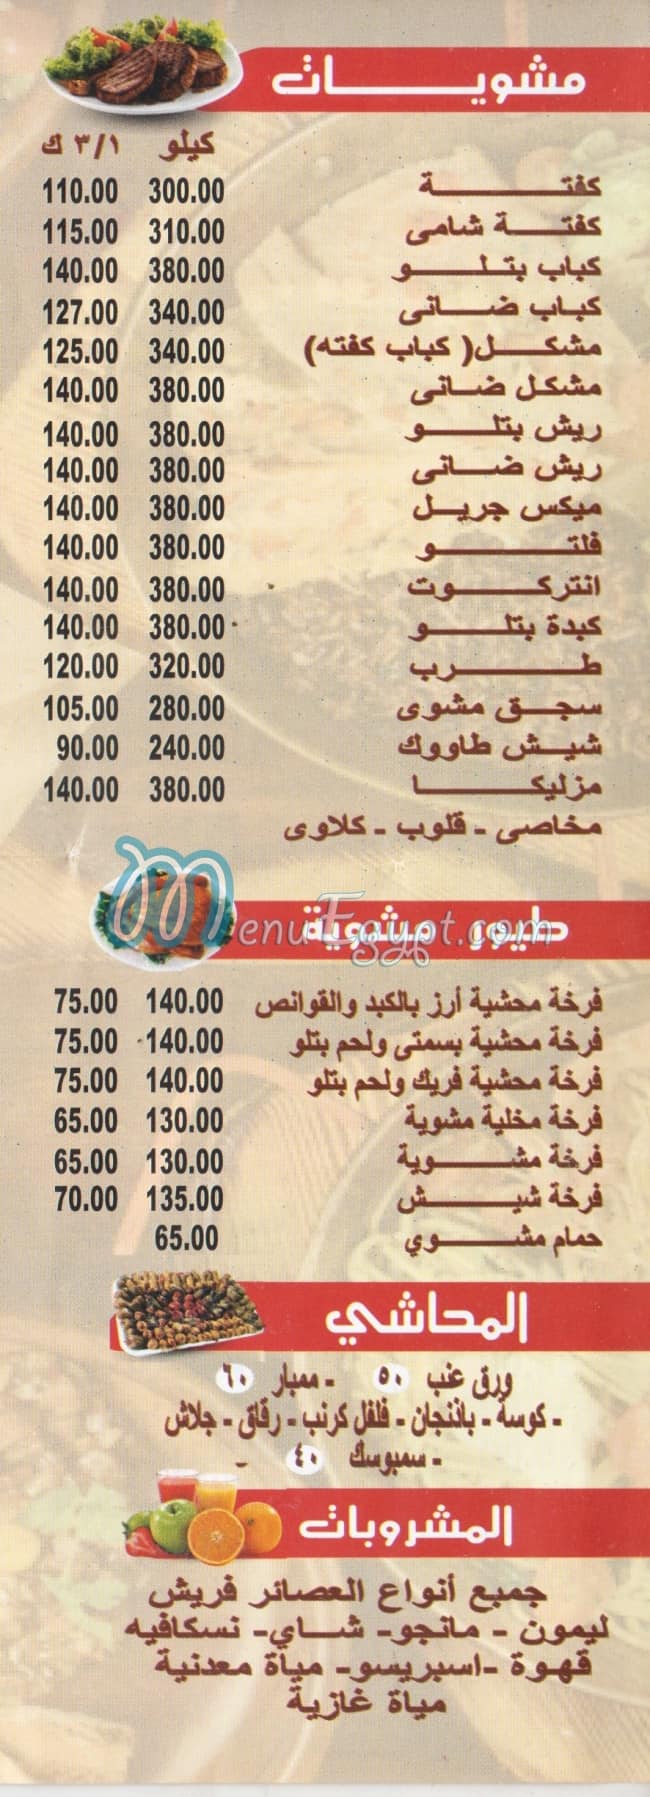 Mohamed Ahmed Alex delivery menu